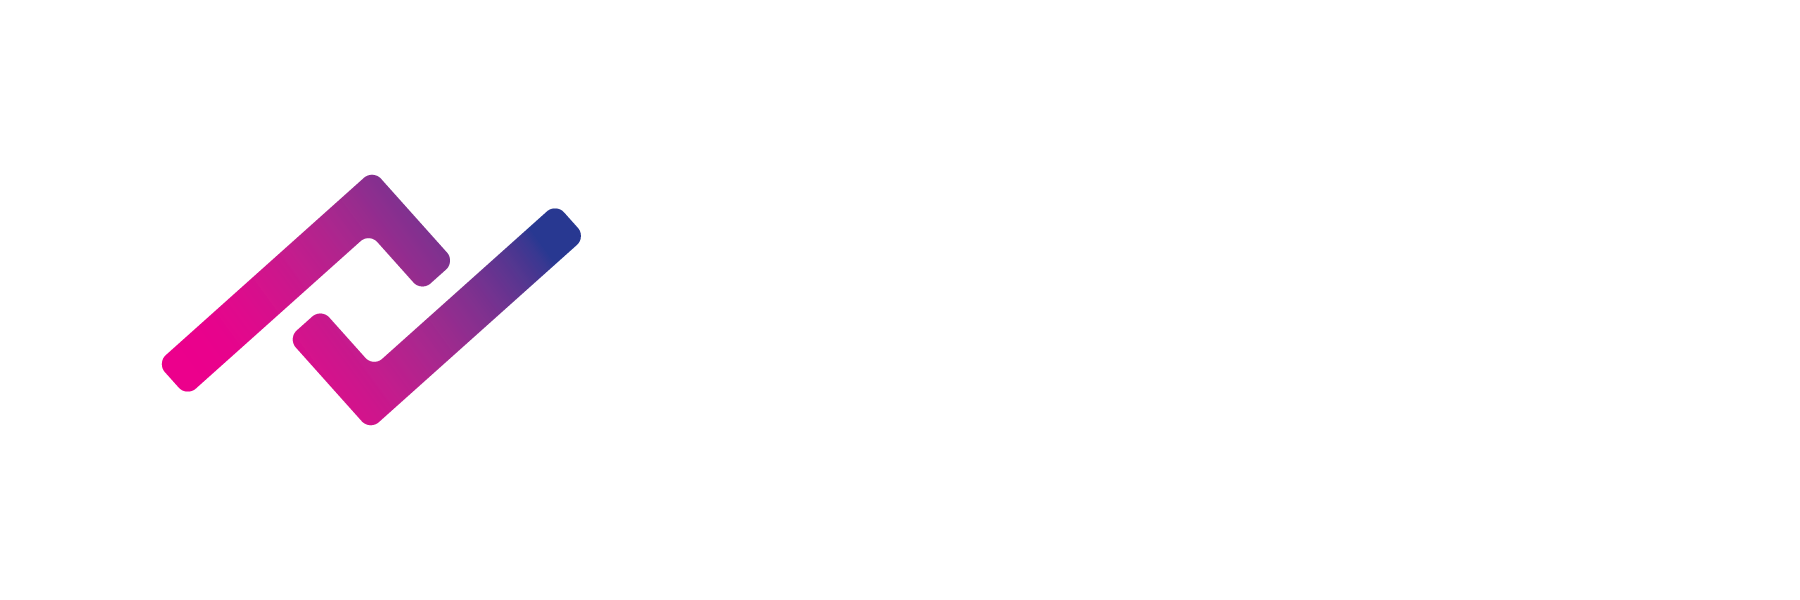 Traderlink